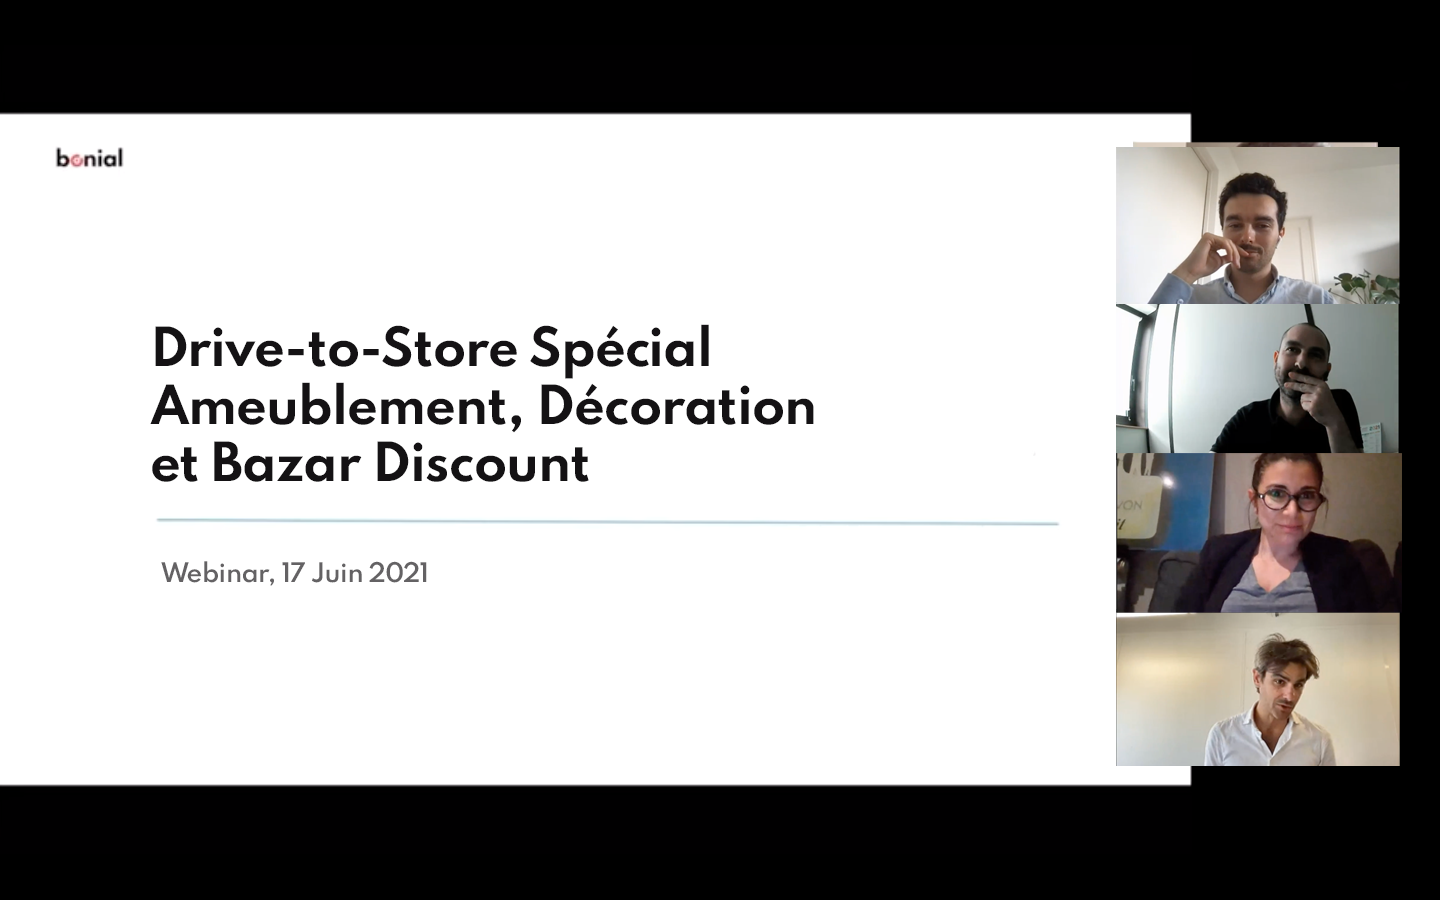 Drive-to-Store, Spécial Ameublement Décoration et Bazar Discount